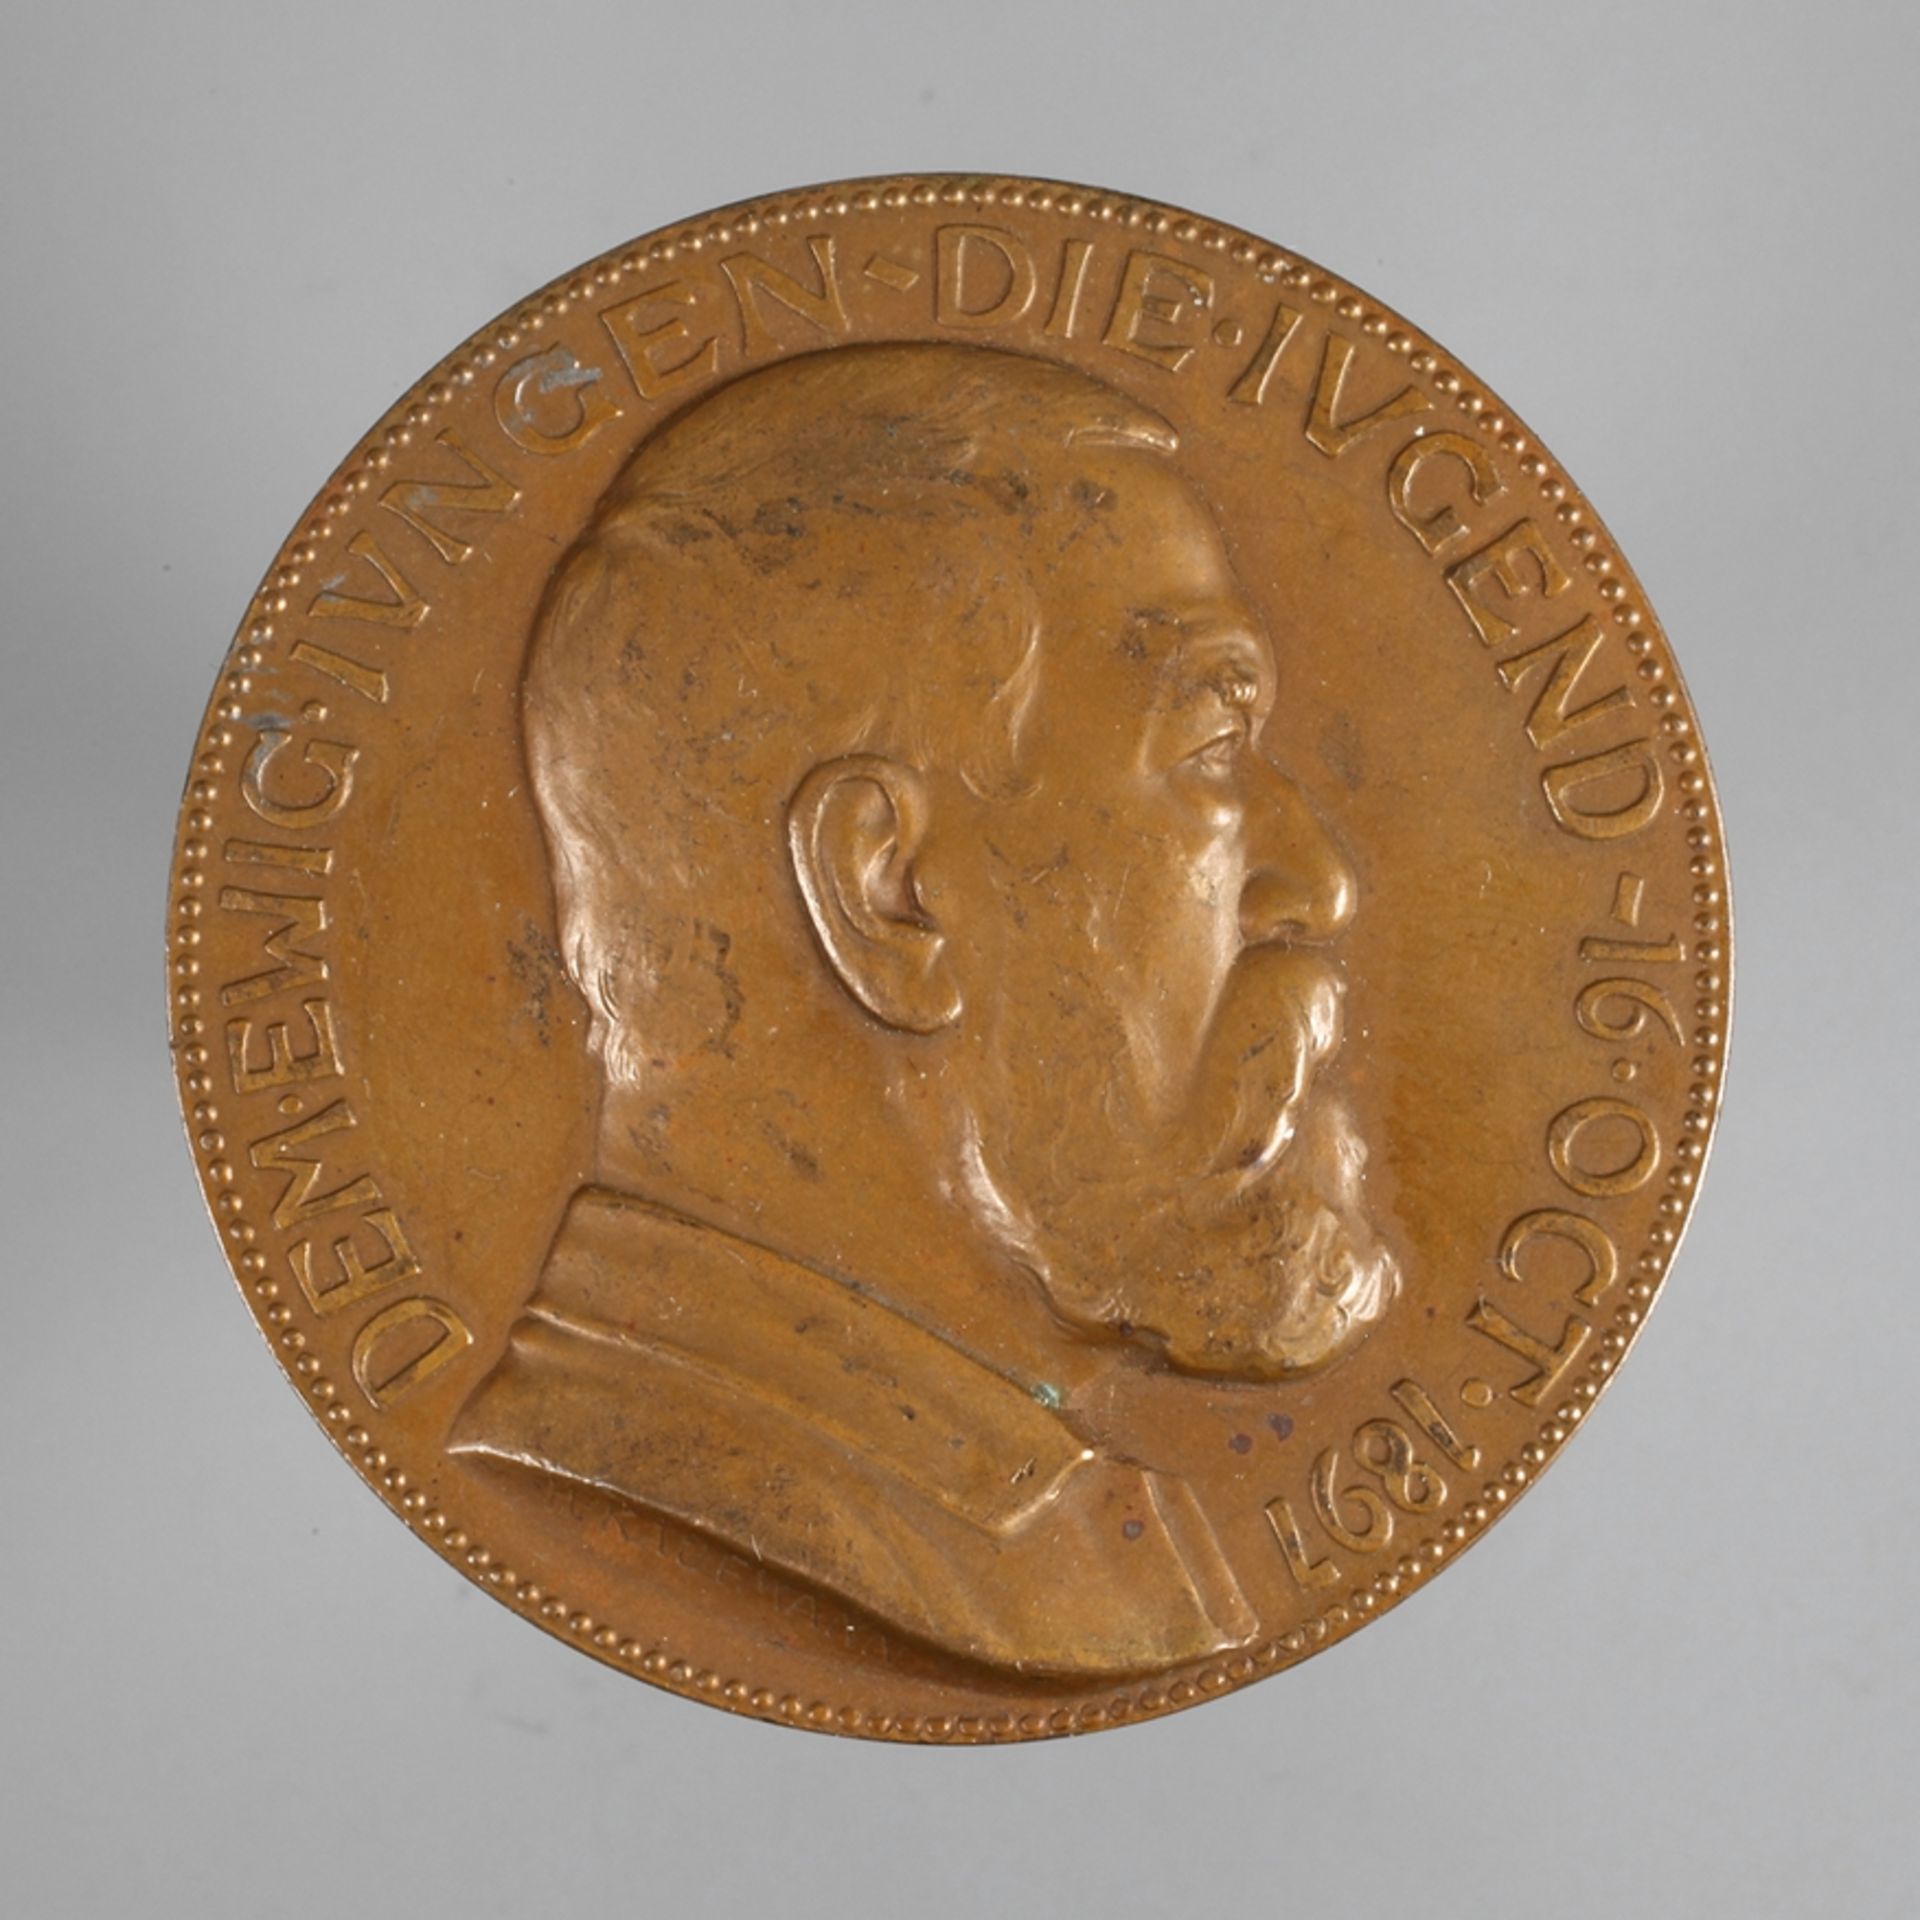 Medaille Arnold Böcklin1897 von Hugo Kaufmann, Bronze, Büste Böcklins nach rechts/alter Faun, als